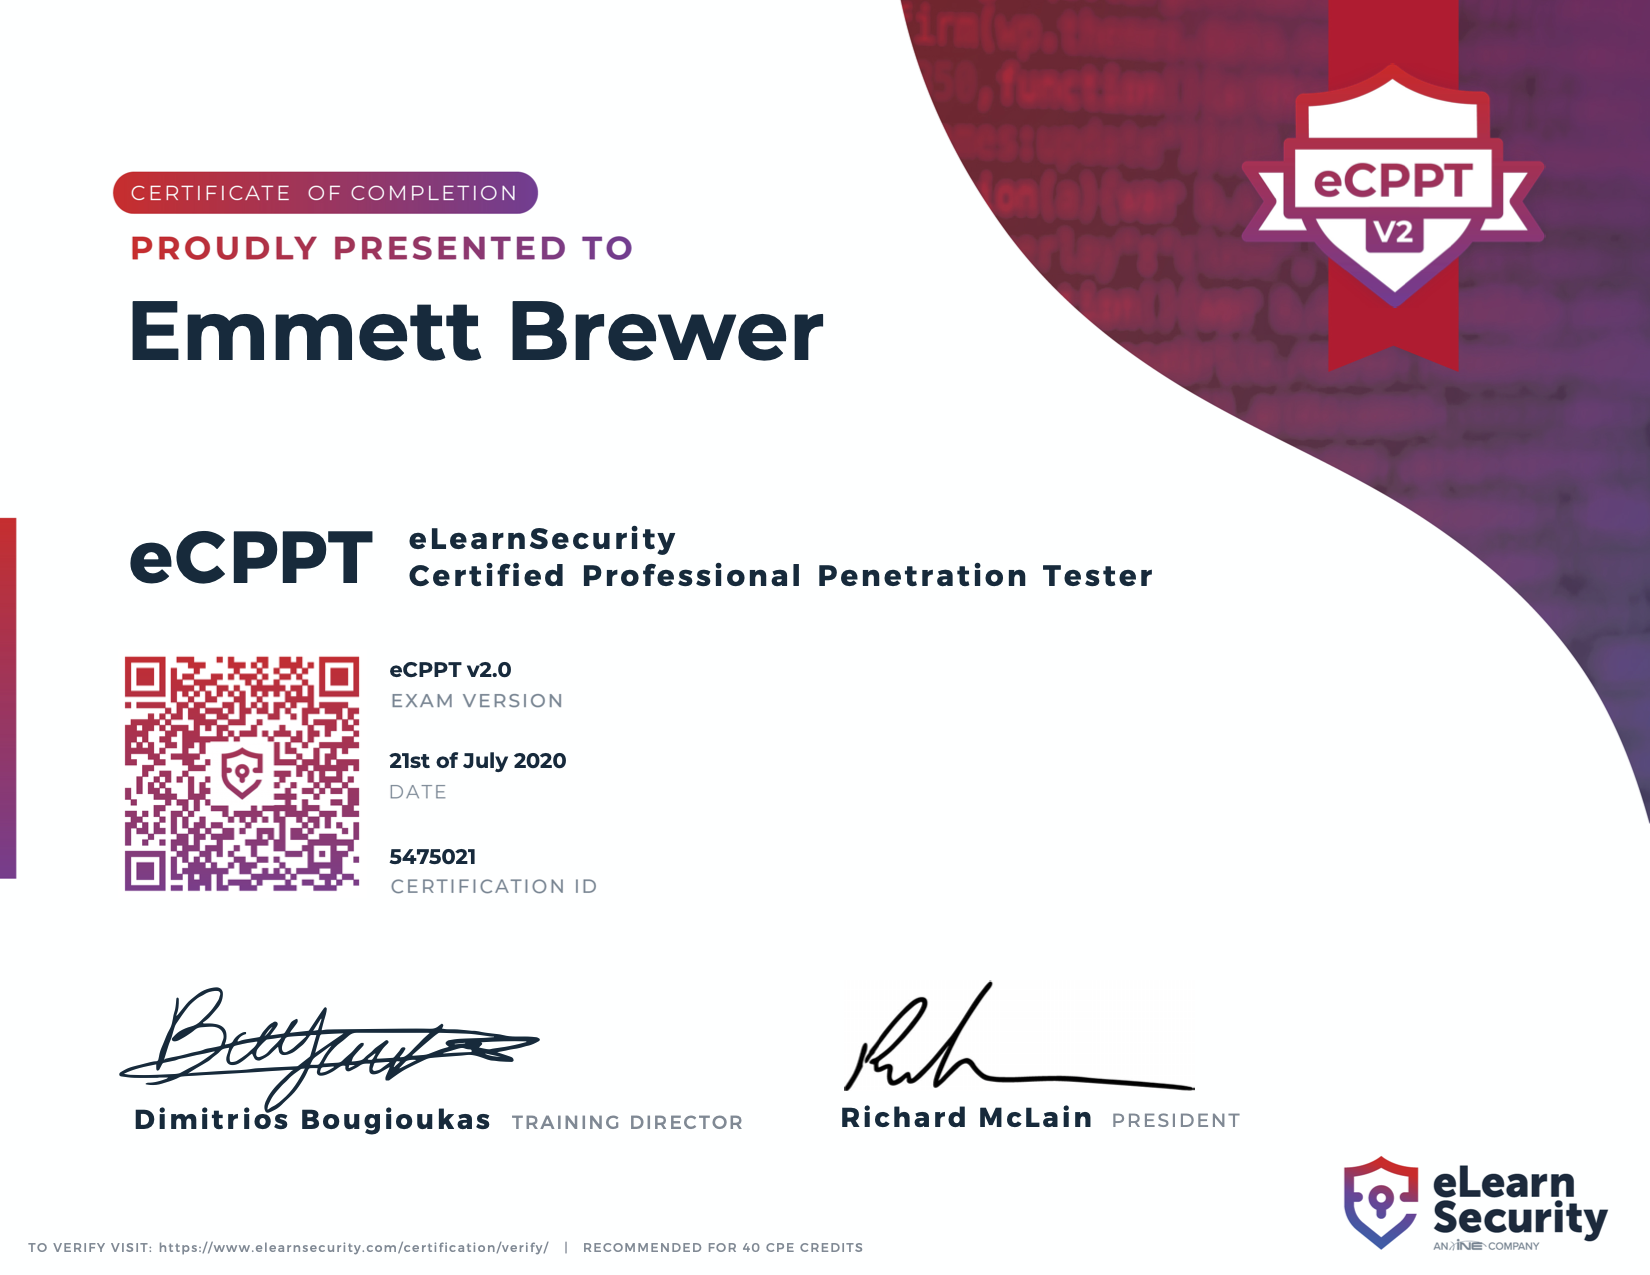 eCPPT Certificate